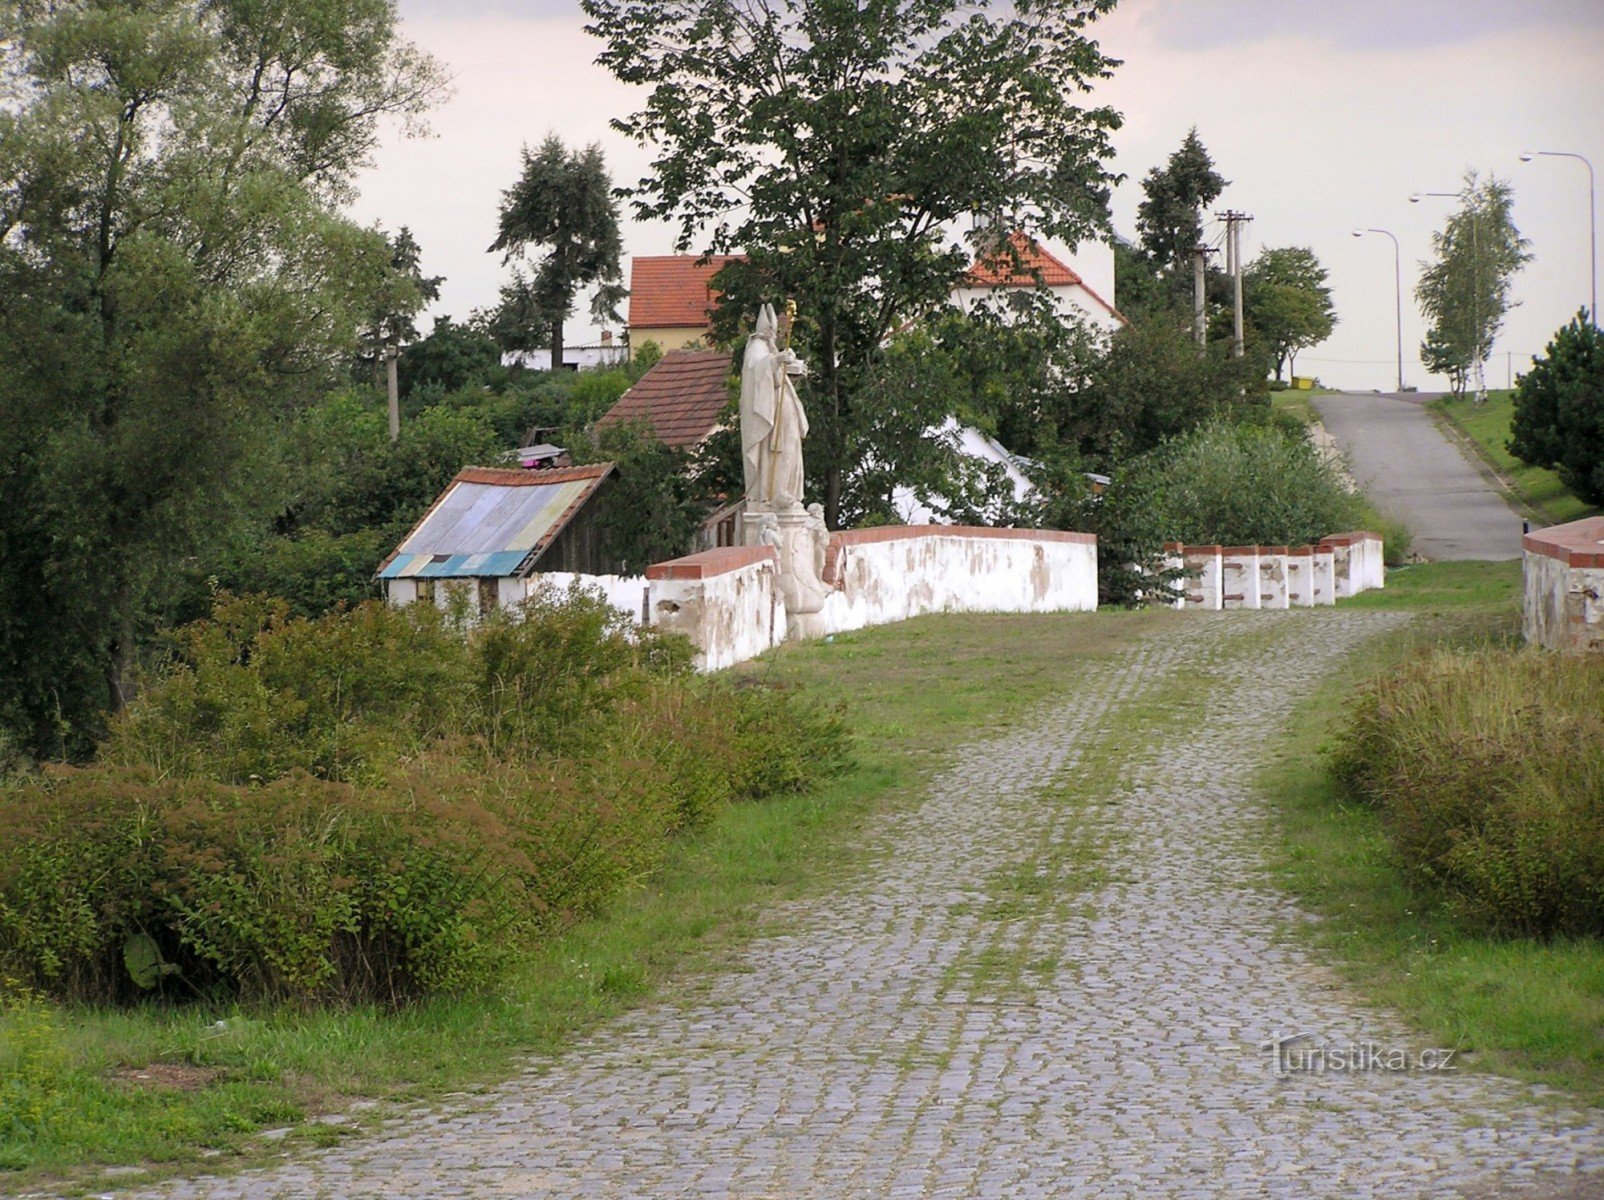 un tratto ben conservato della vecchia strada lastricata imperiale con un ponte (una statua di San Nicola su di esso)